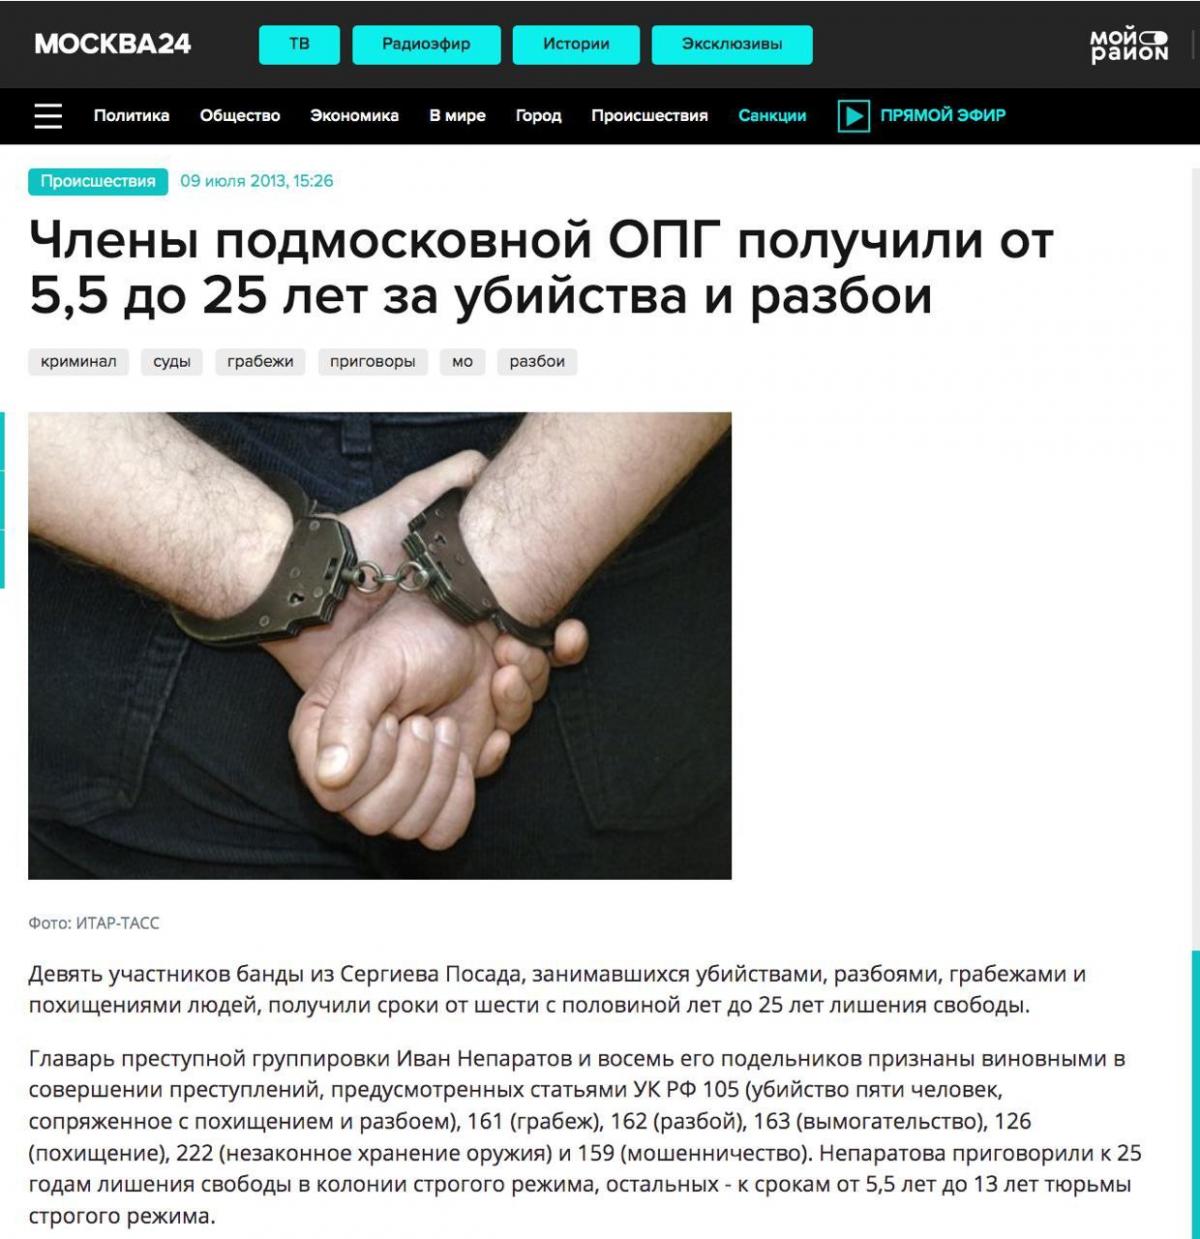 Новина про засудження Непаратова / скриншот